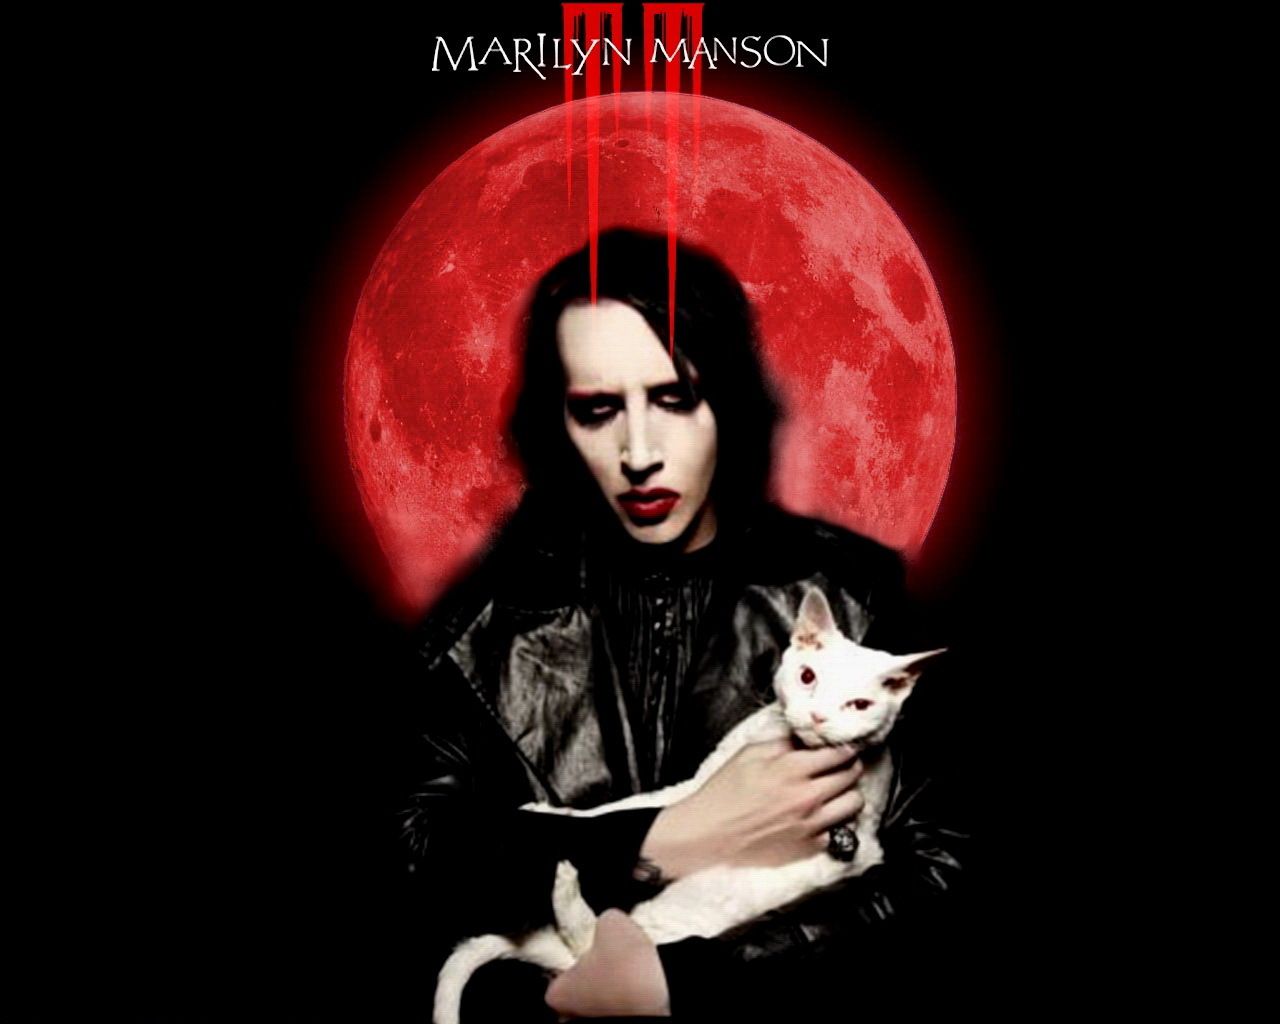 Marilyn Manson - Marilyn Manson Wallpaper 16107095 - Fanpop